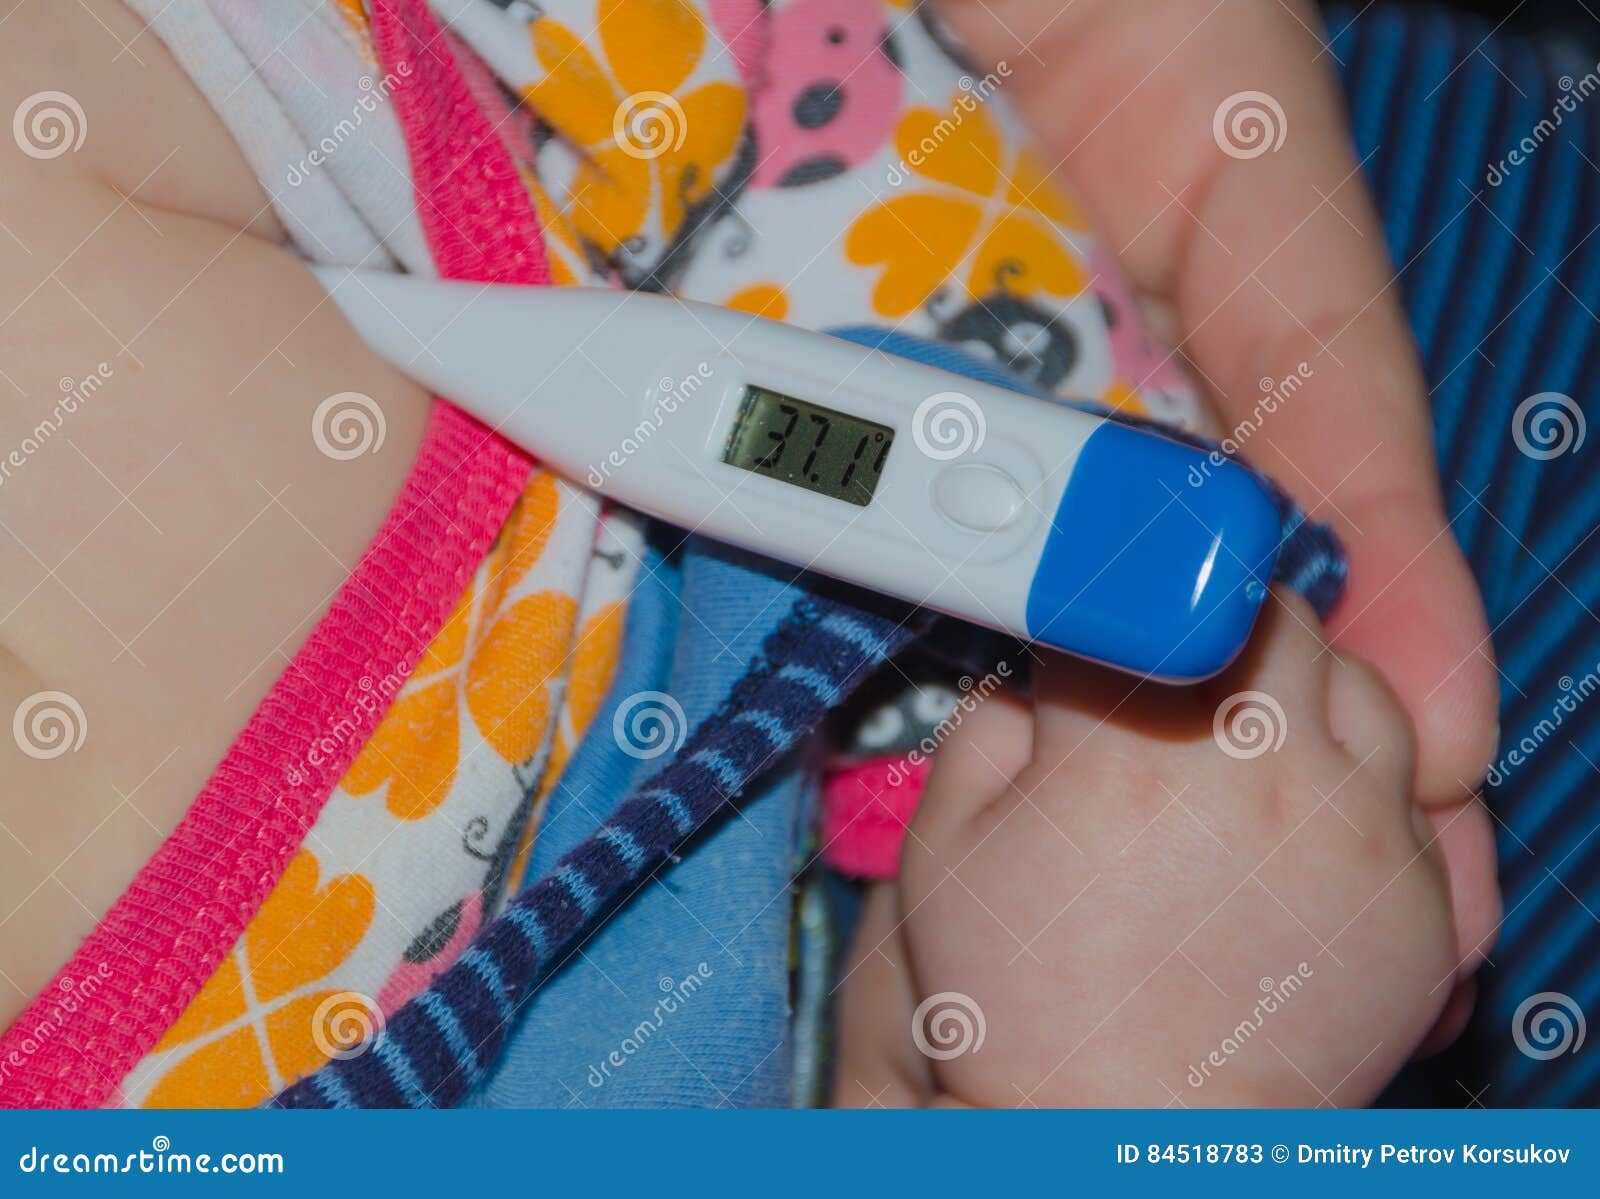 Как правильно измерить ректальную температуру у ребенка: Секреты точной диагностики